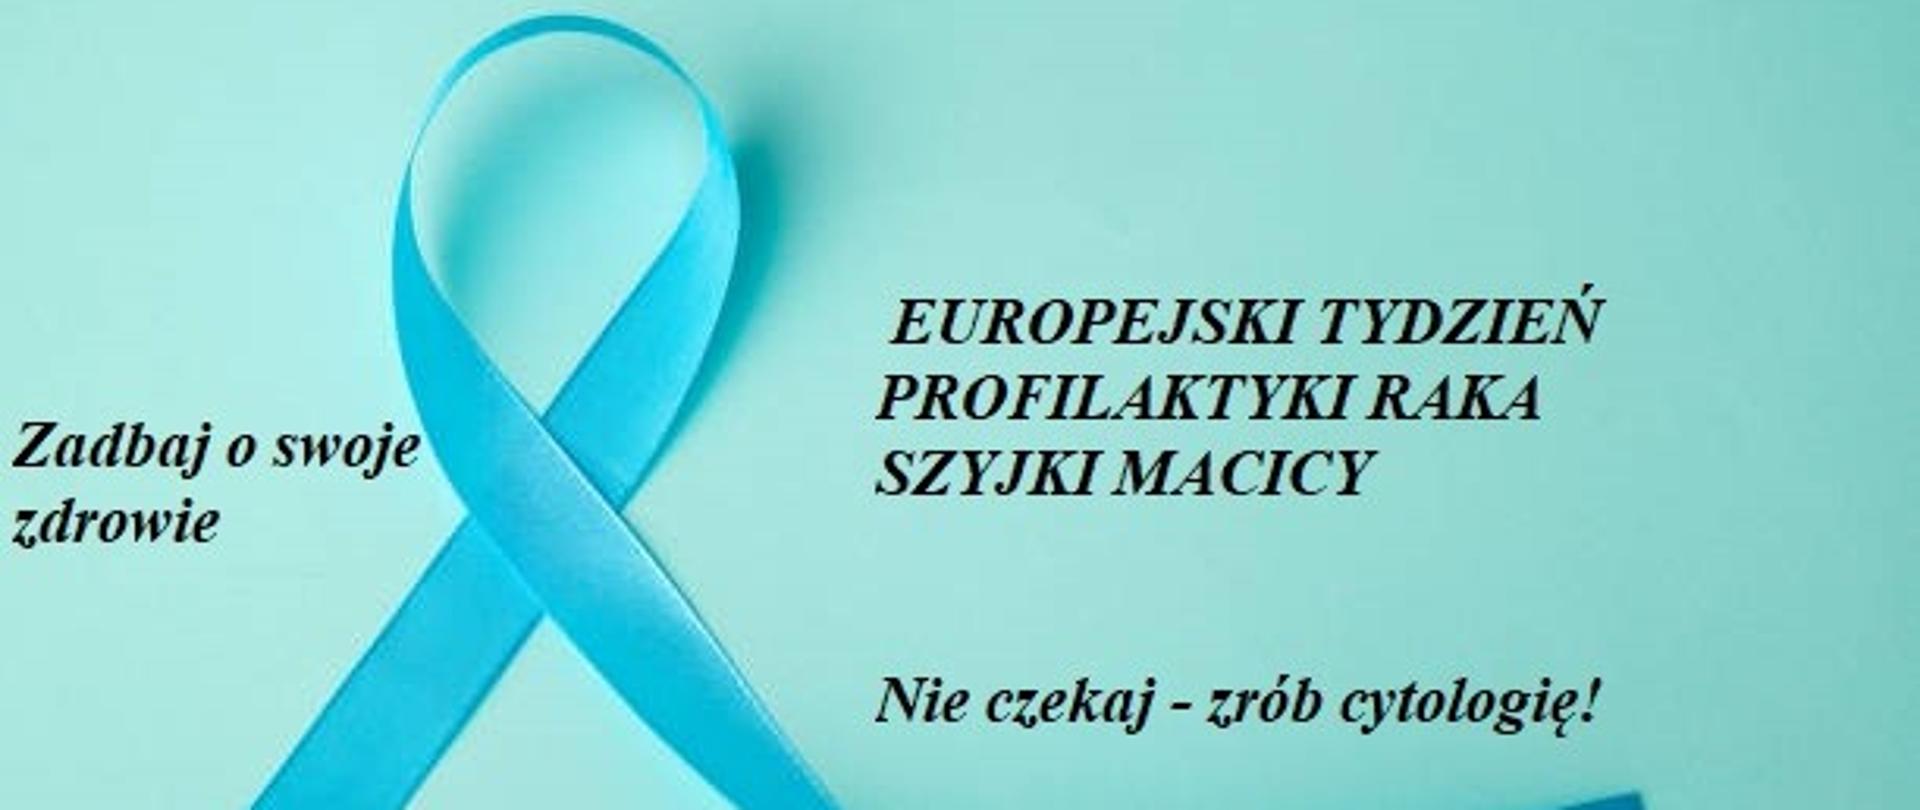 Europejski Tydzień Profilaktyki Raka Szyjki Macicy